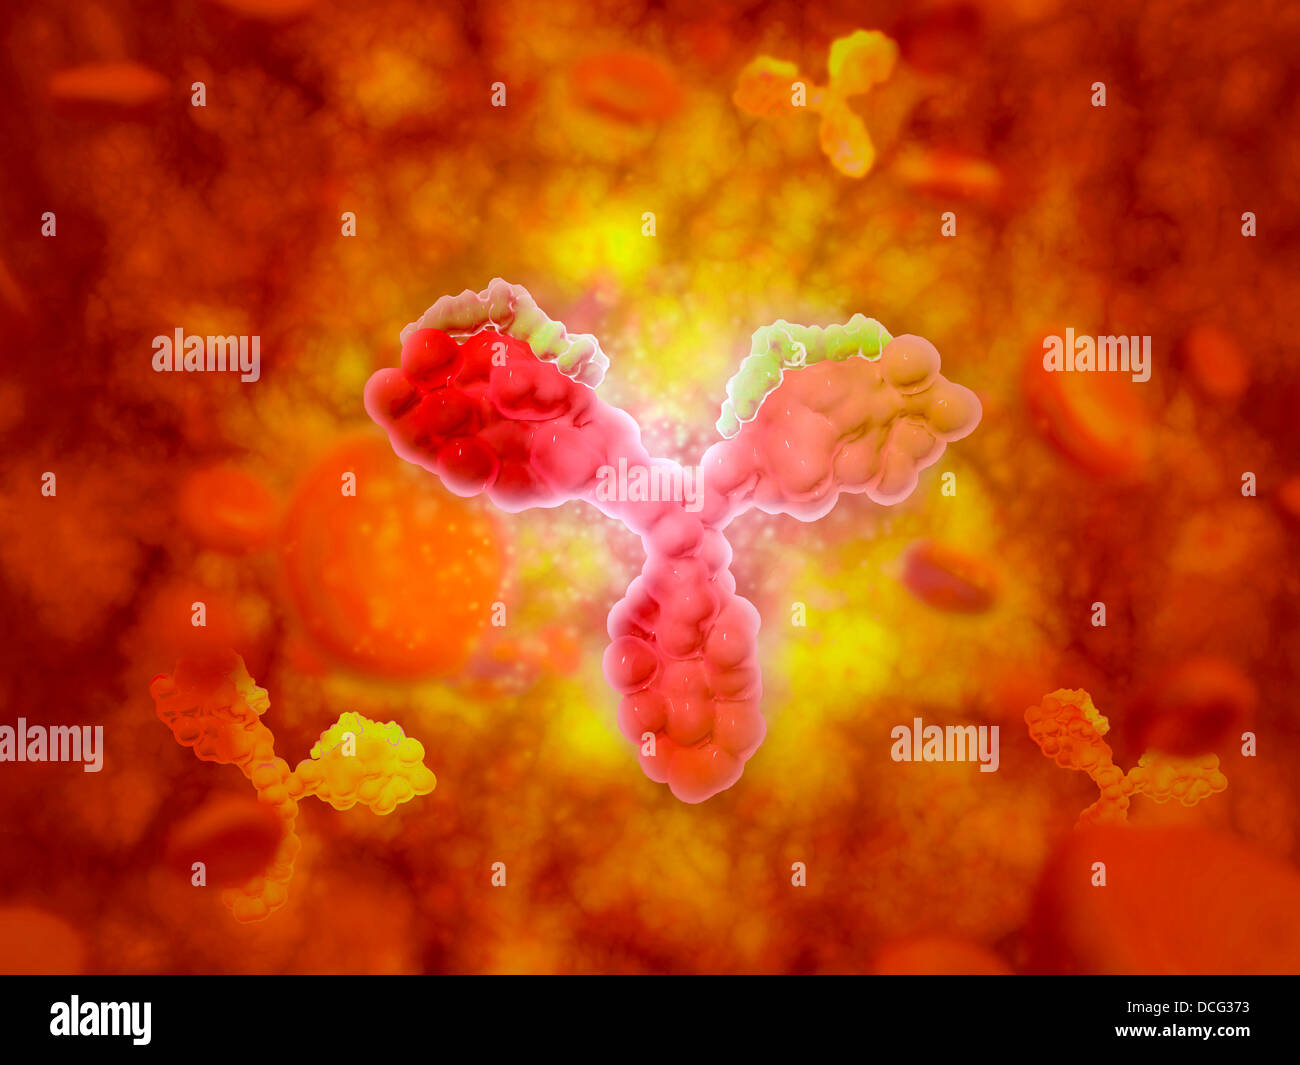 Mikroskopische Ansicht des menschlichen Anitbodies mit roten Blutkörperchen. Stockfoto